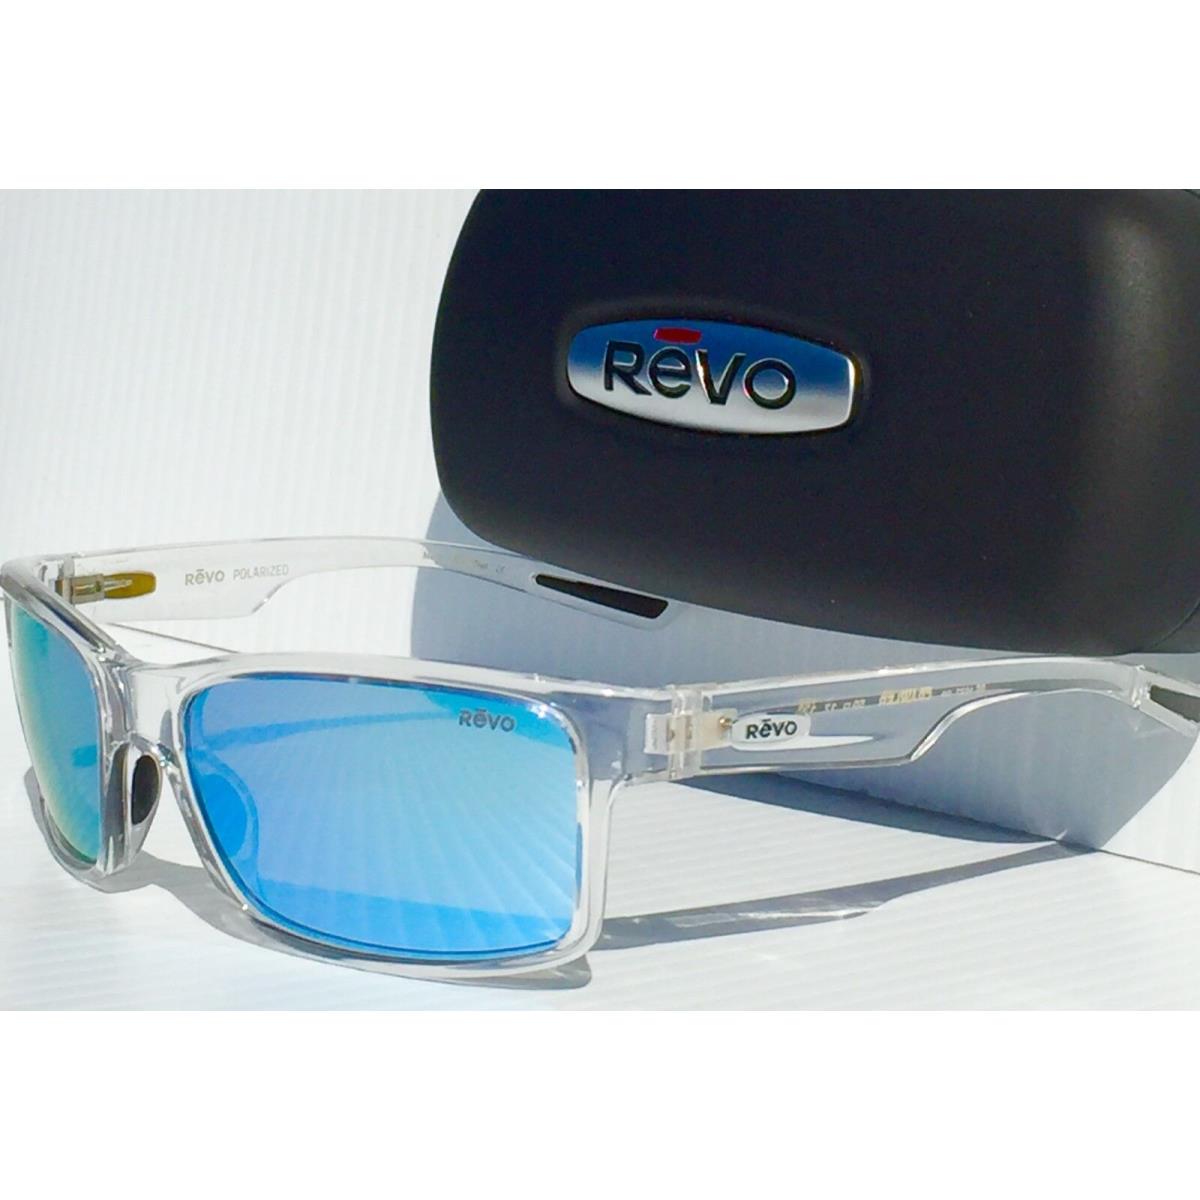 Revo sunglasses Crawler - Clear Frame, Blue Lens